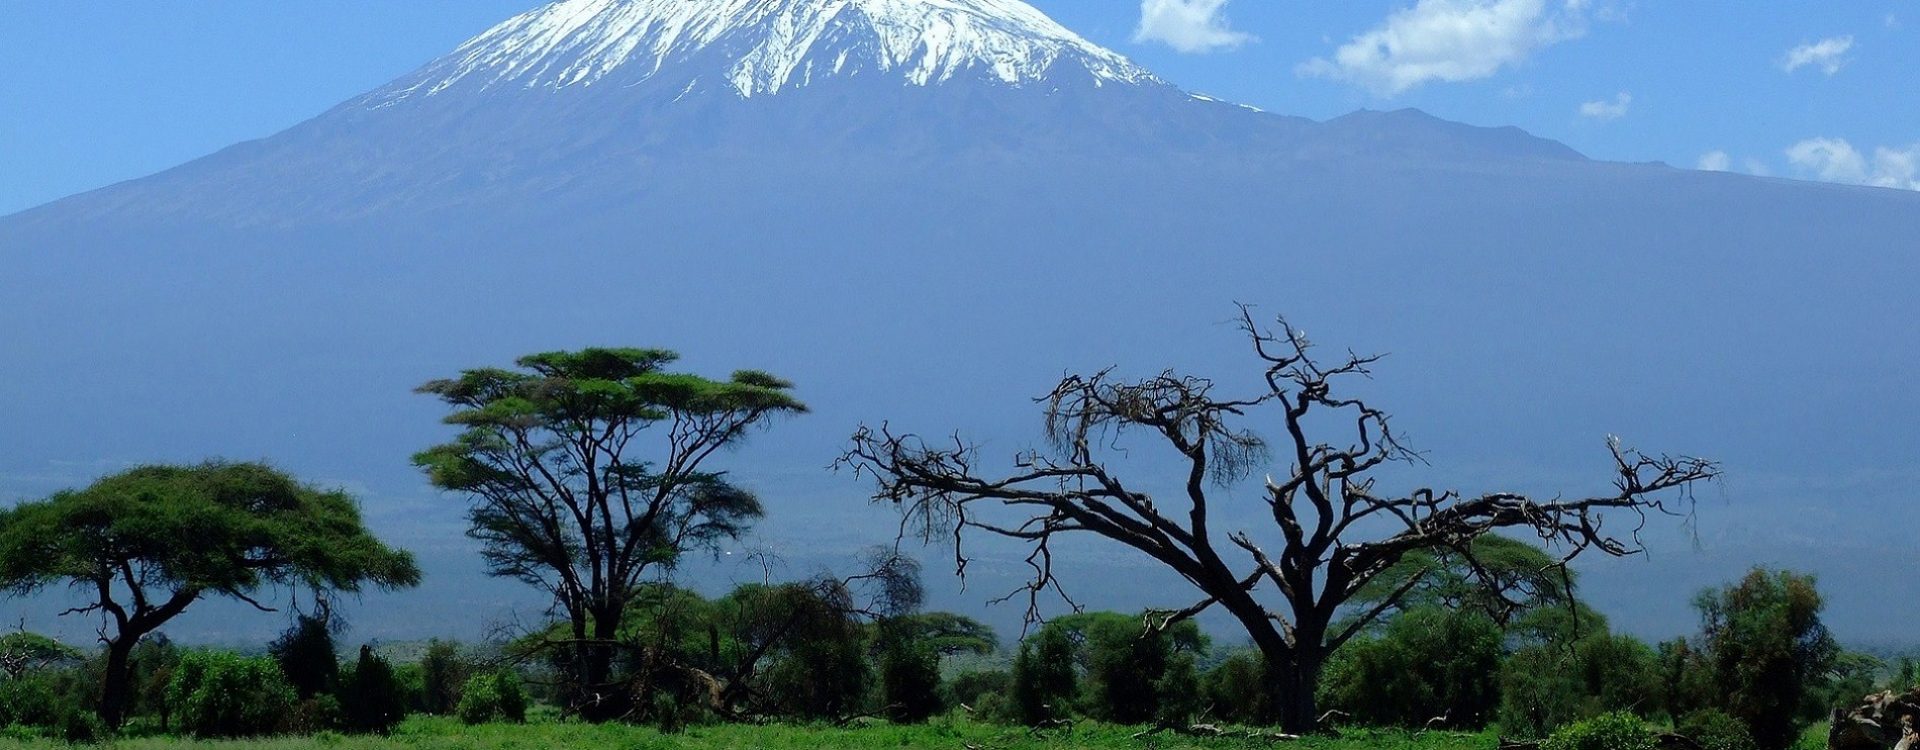 Kenija – ime je gotovo sinonim za riječ “safari”. Krenite na putovanje u ovu, suncem okupanu zemlju.